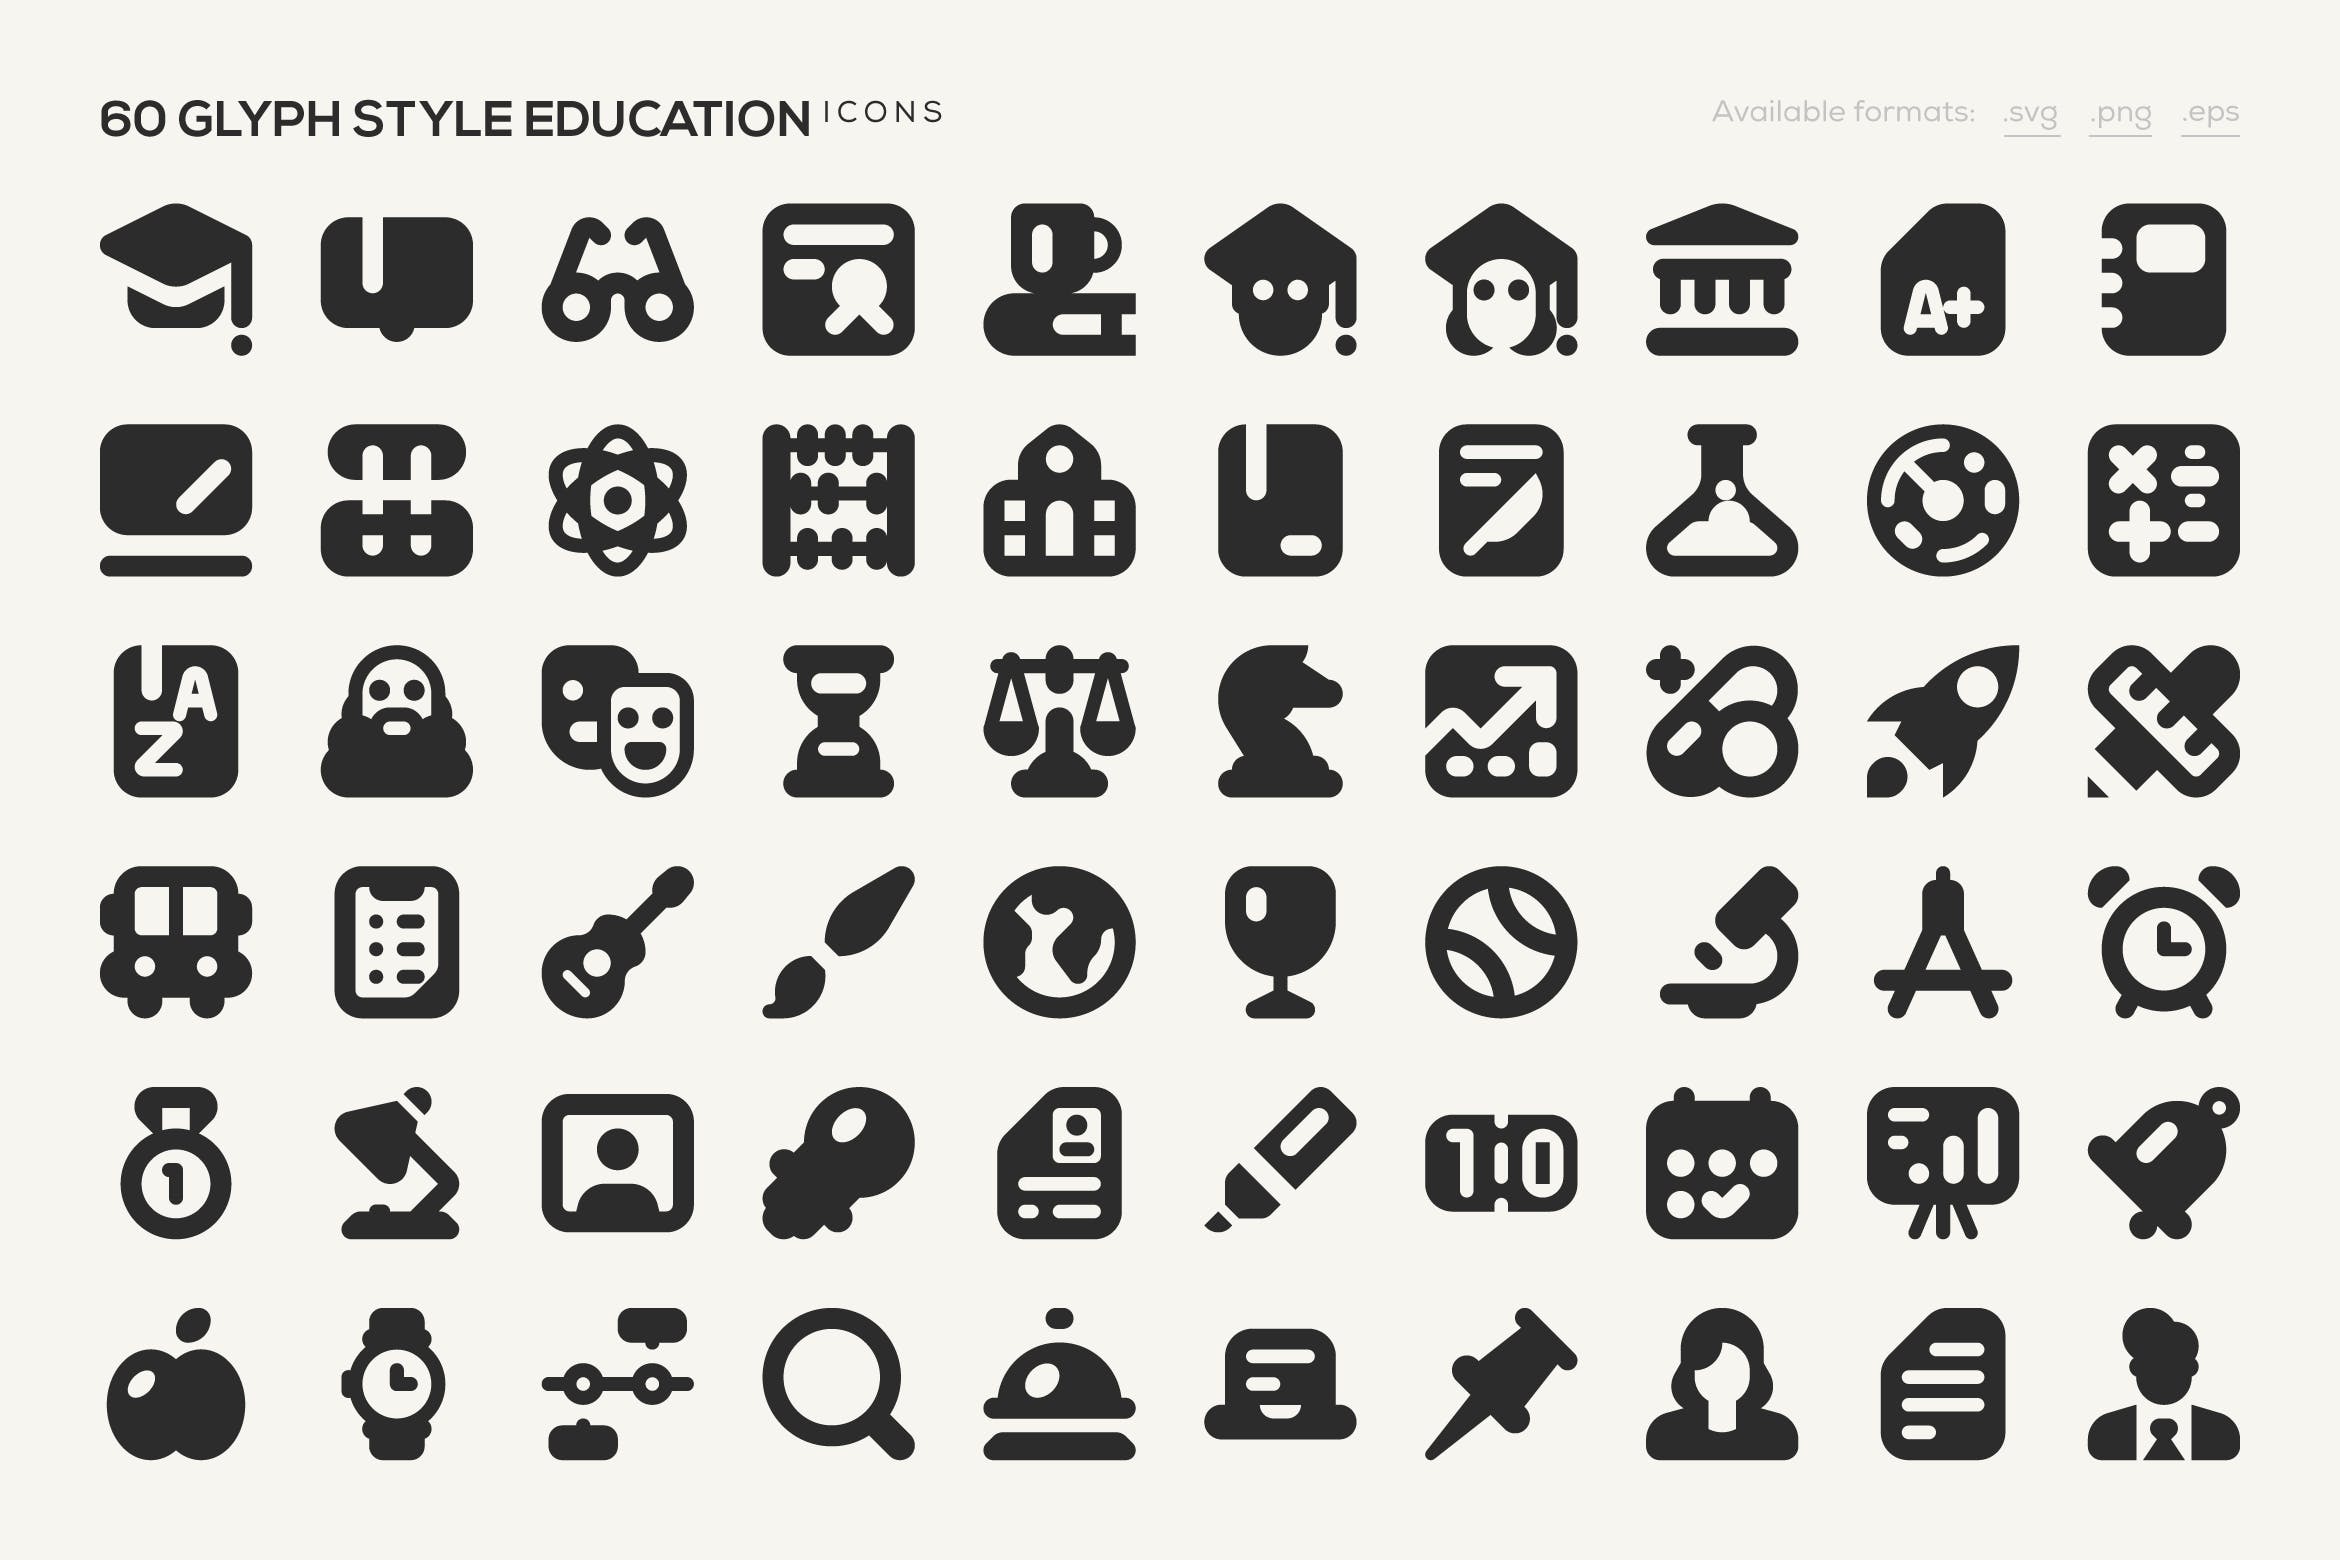 教育主题字体图标素材 60 Glyph Style Educ